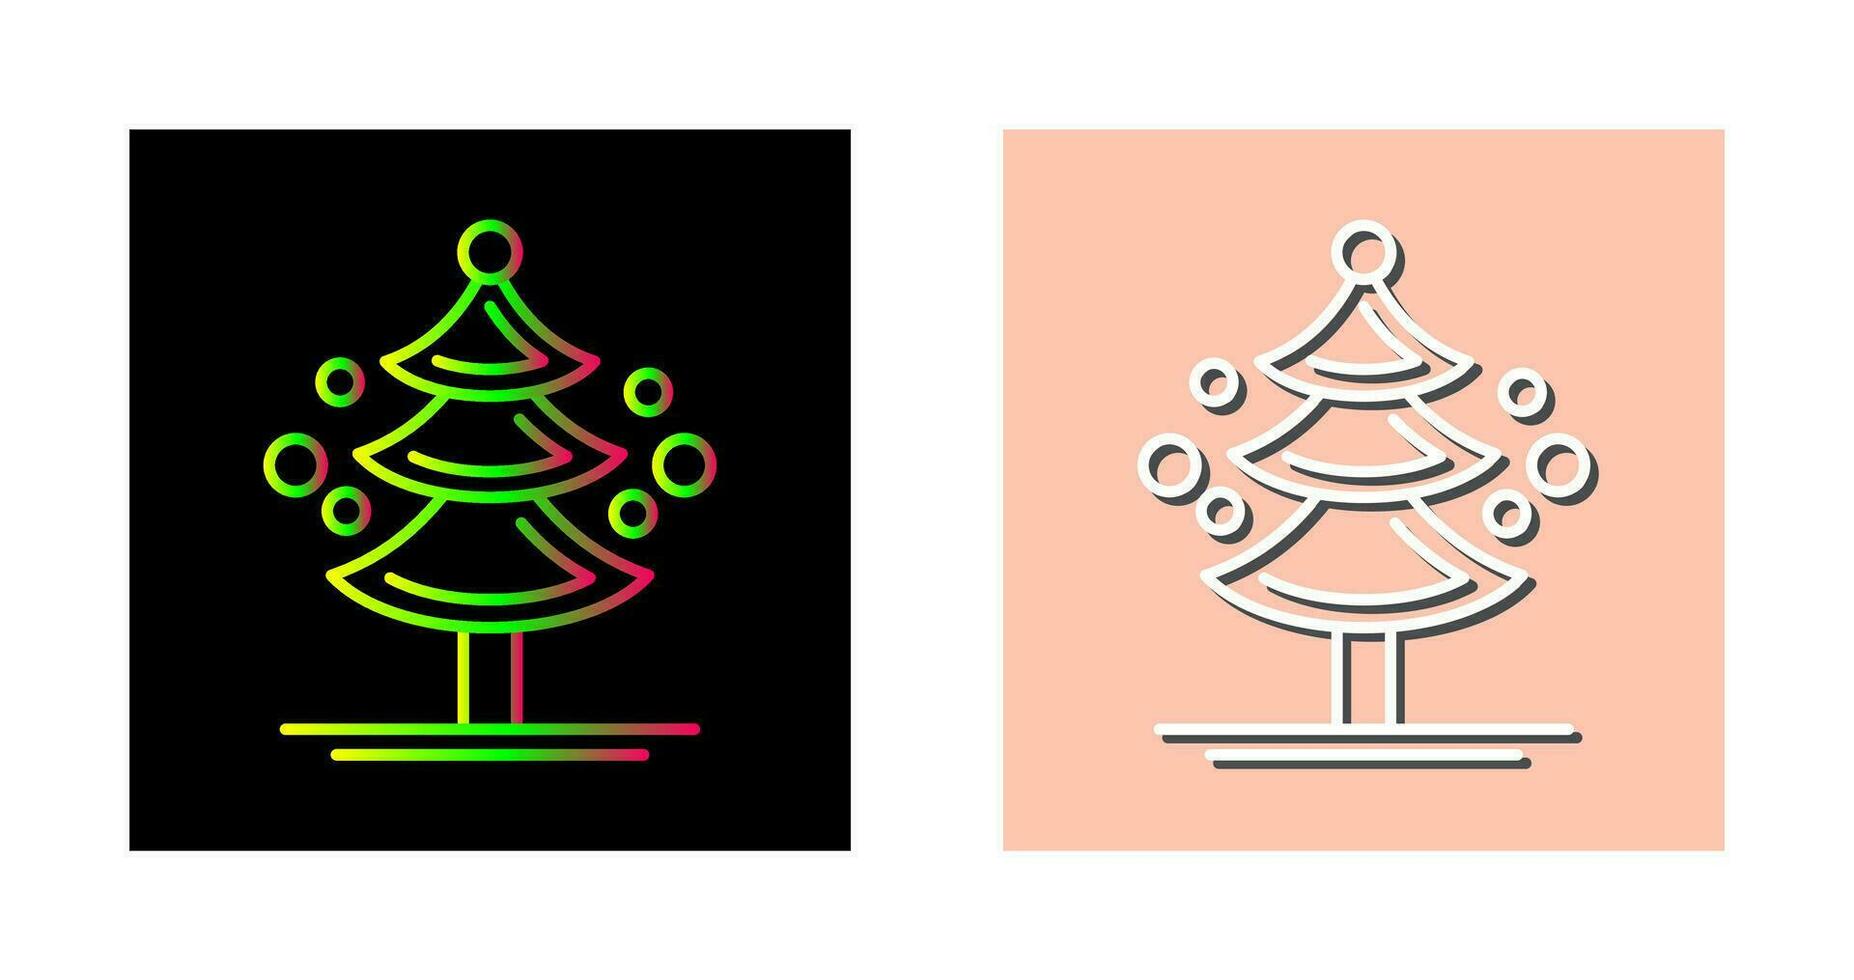 Pine Tree Vector Icon